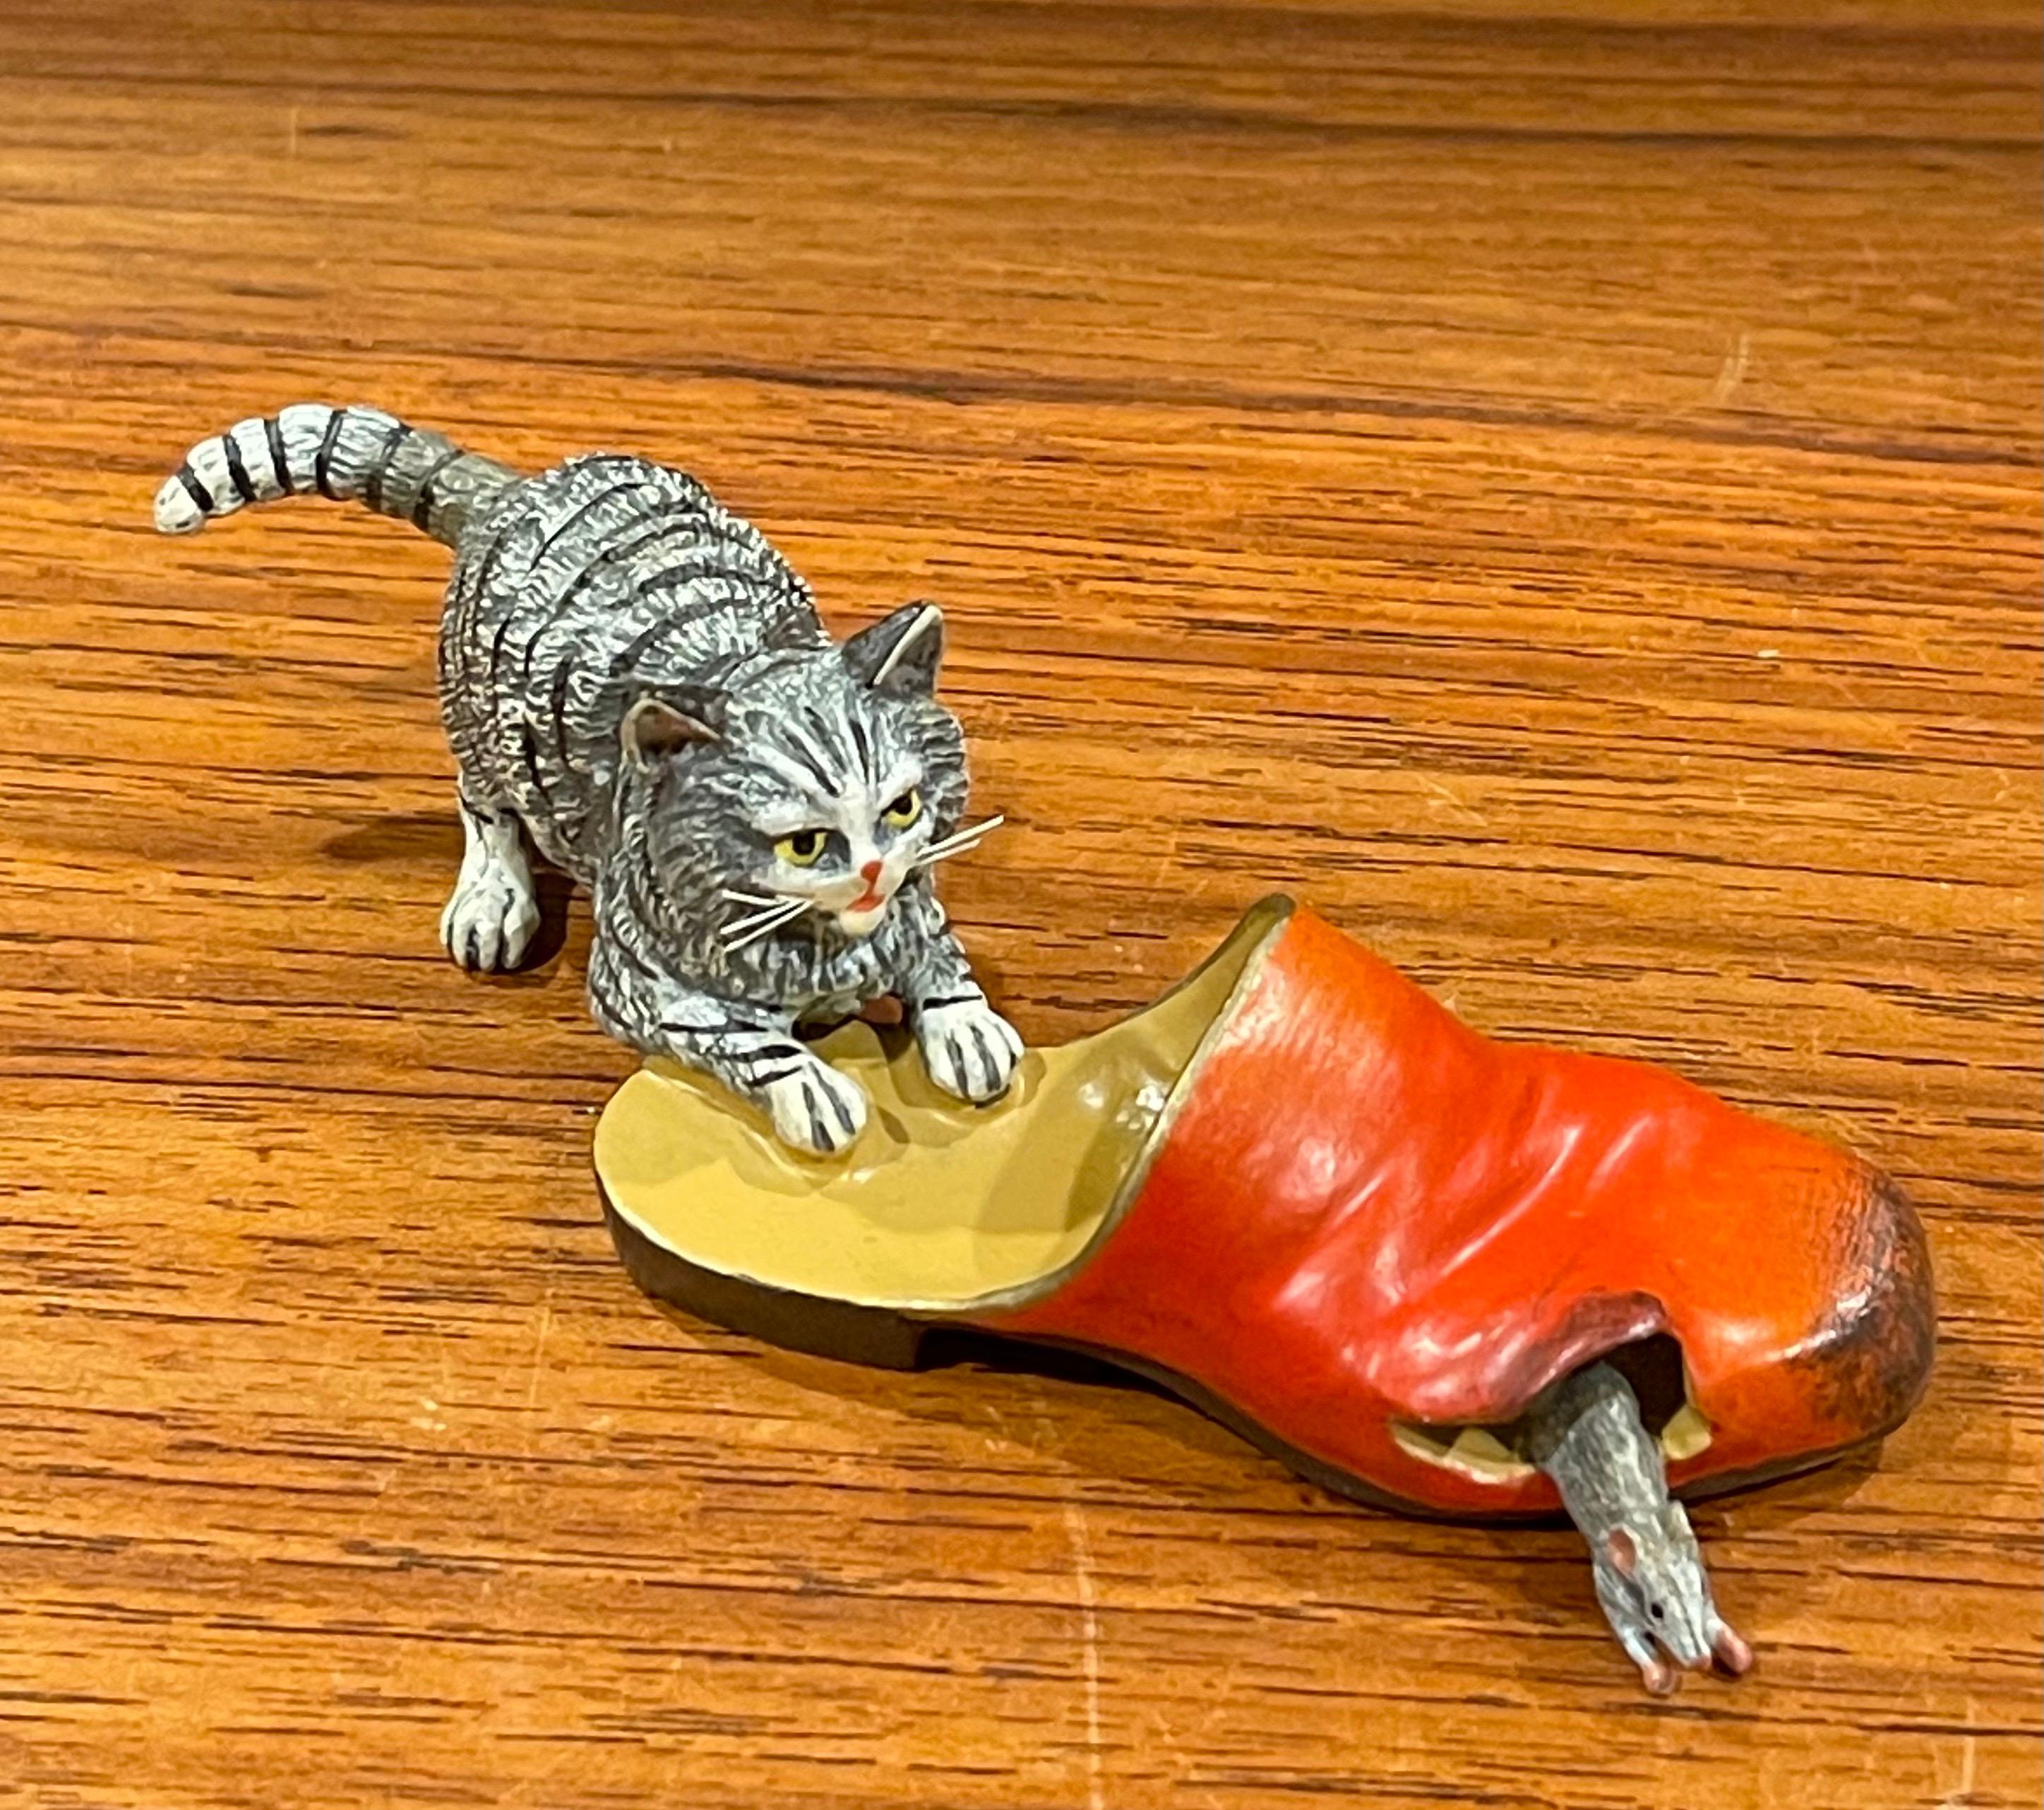 Sculpture miniature en bronze autrichien peinte à la main représentant un chat, une souris et une chaussure, vers les années 2000. Cette pièce, dont les détails et le poids sont étonnants, est en excellent état. La pièce est coulée individuellement